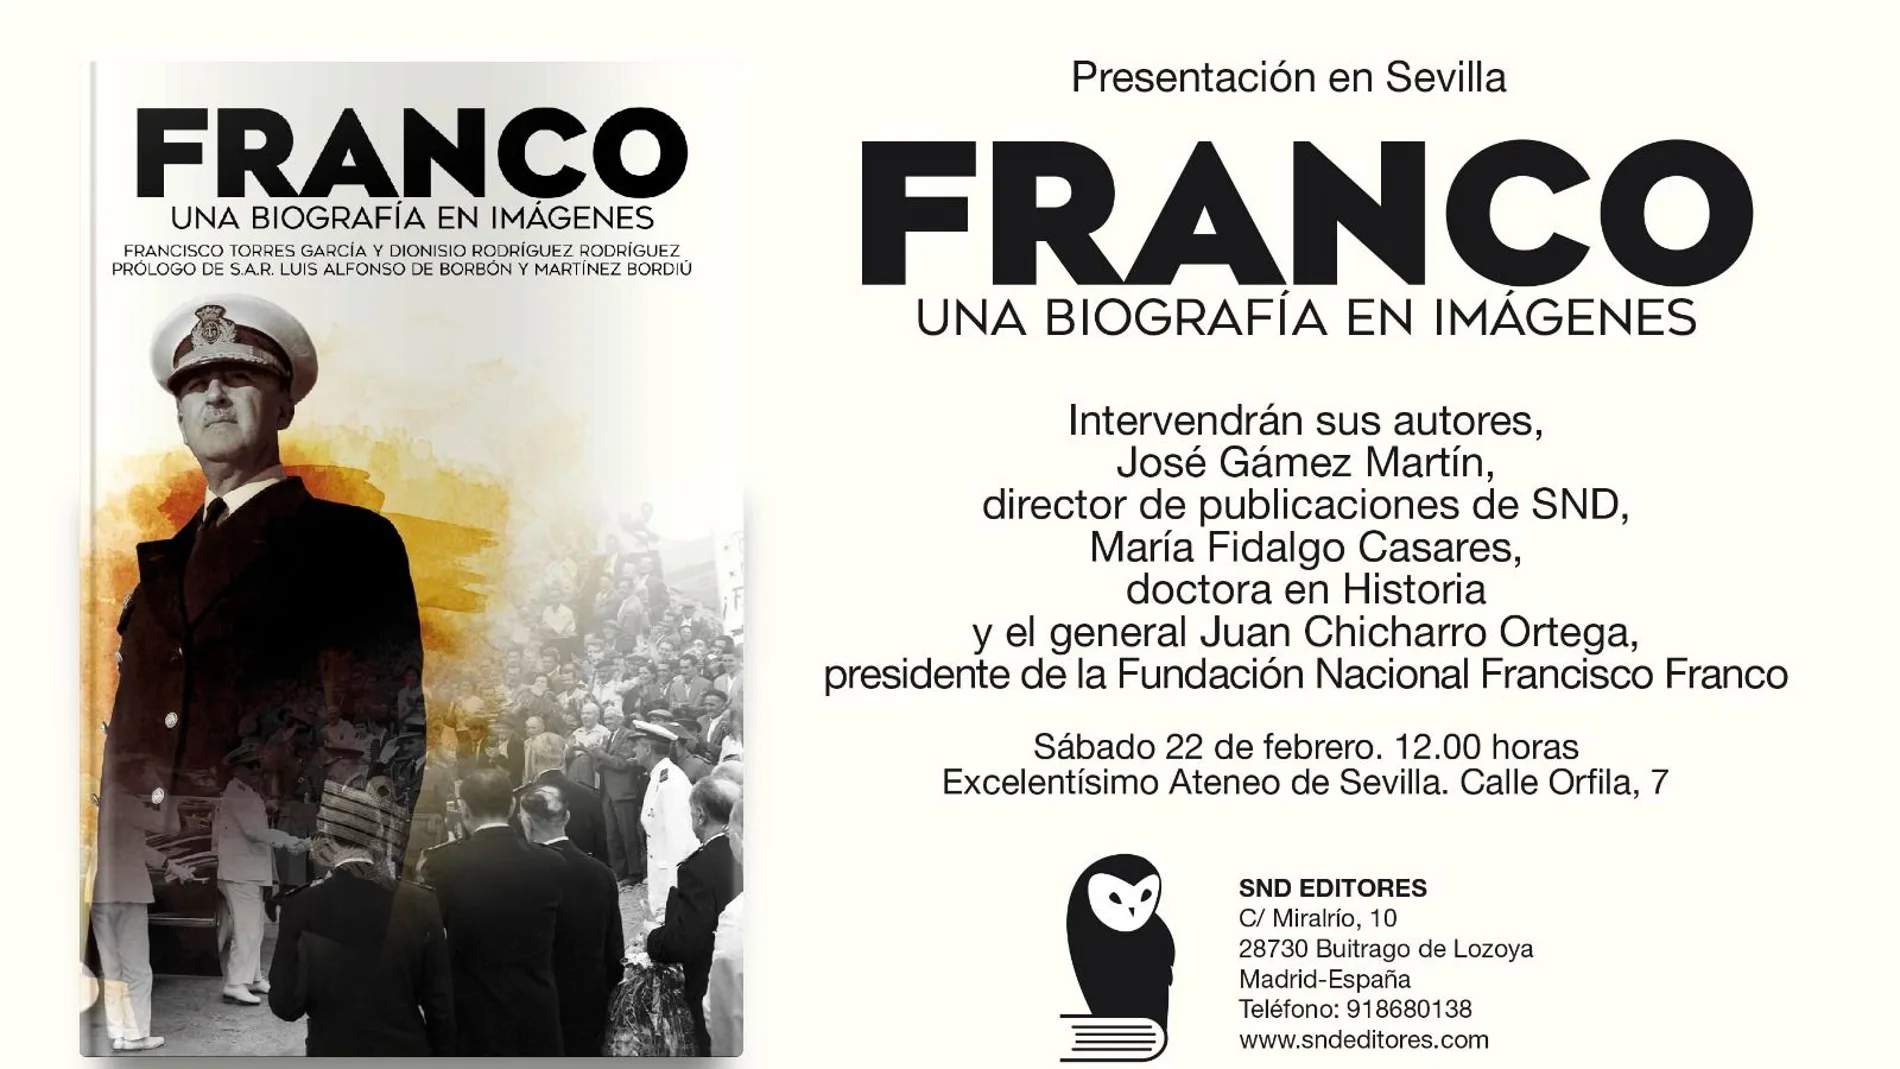 Portada y cartel de presentación del libro sobre Franco en Sevilla